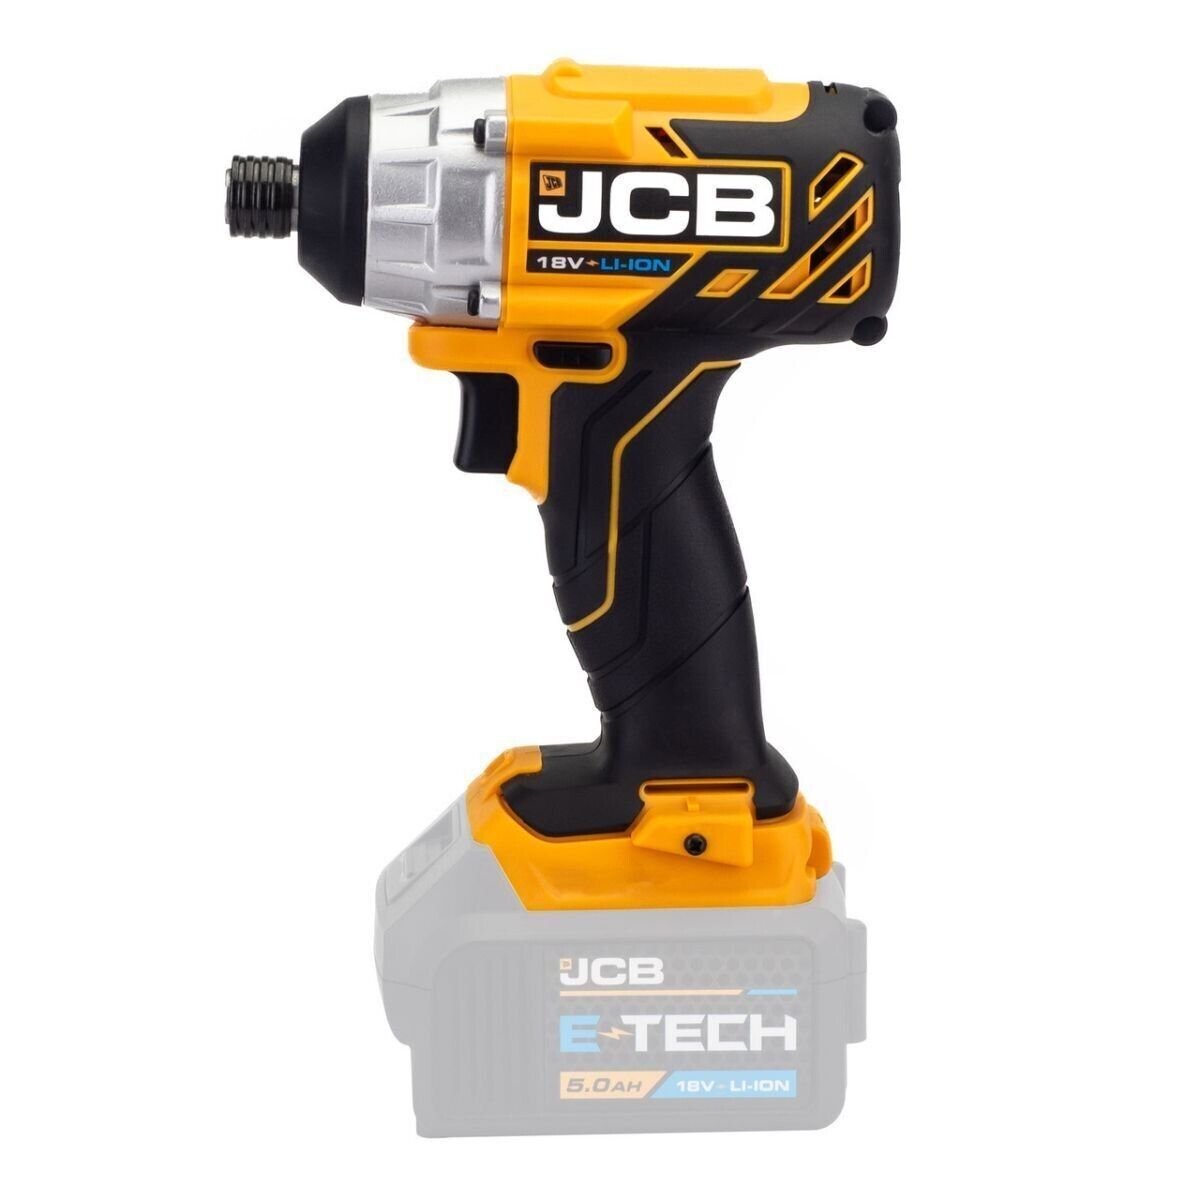 JCB 21-18BLID-B 18V Brushless Impact Driver Body Only